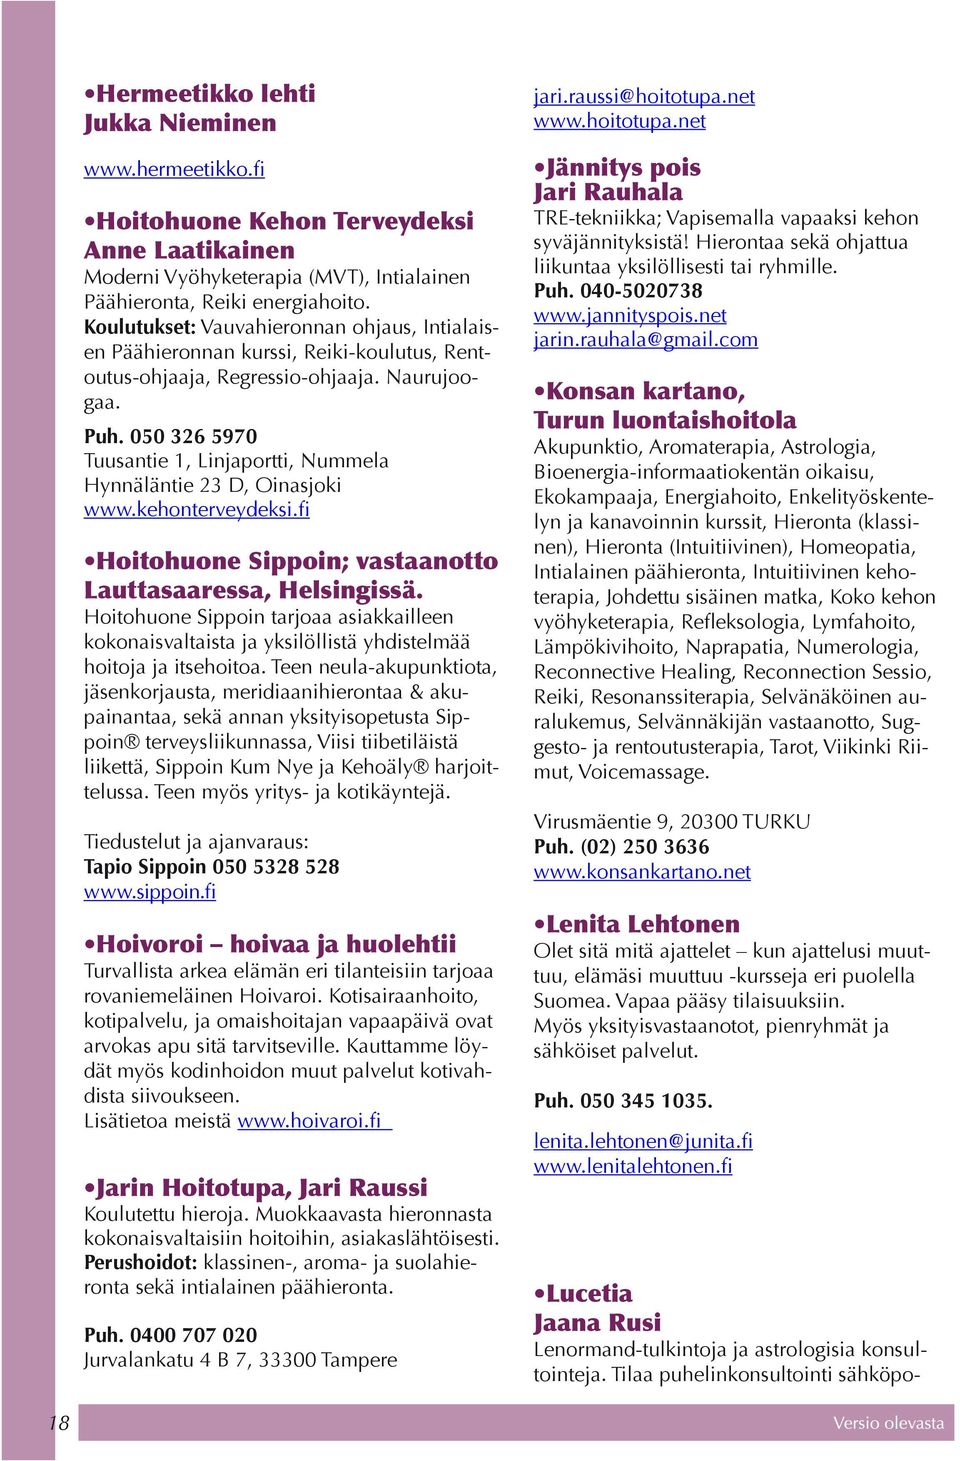 050 326 5970 Tuusantie 1, Linjaportti, Nummela Hynnäläntie 23 D, Oinasjoki www.kehonterveydeksi.fi Hoitohuone Sippoin; vastaanotto Lauttasaaressa, Helsingissä.